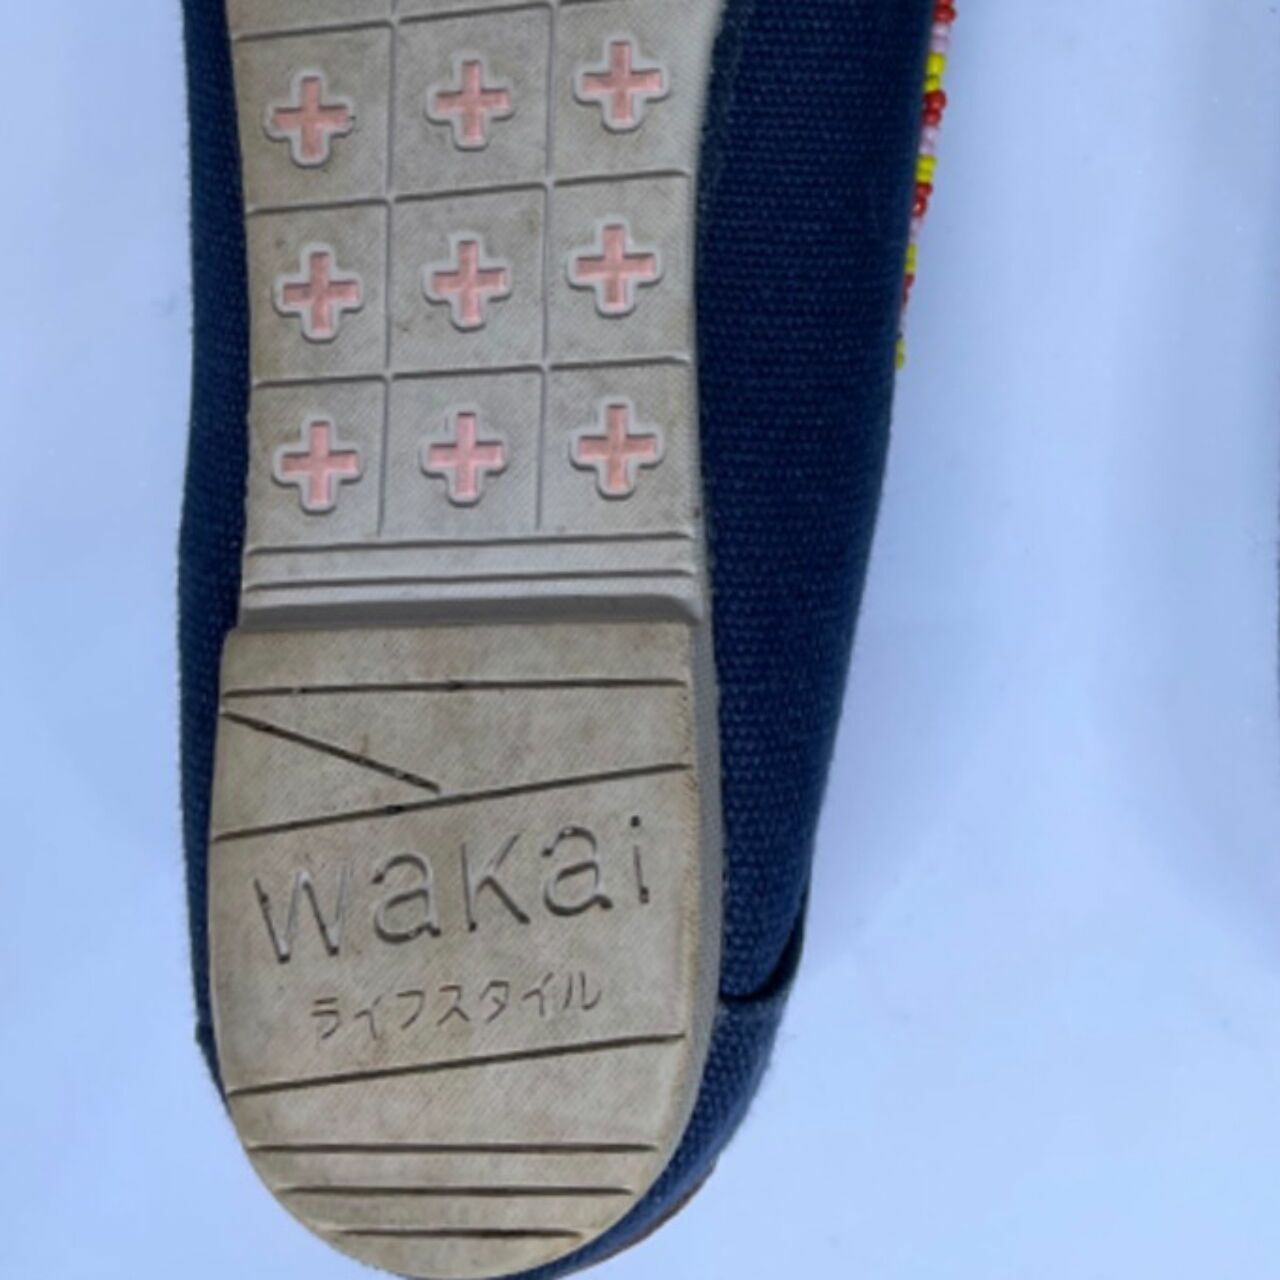 Wakai Navy Geometric Sepatu